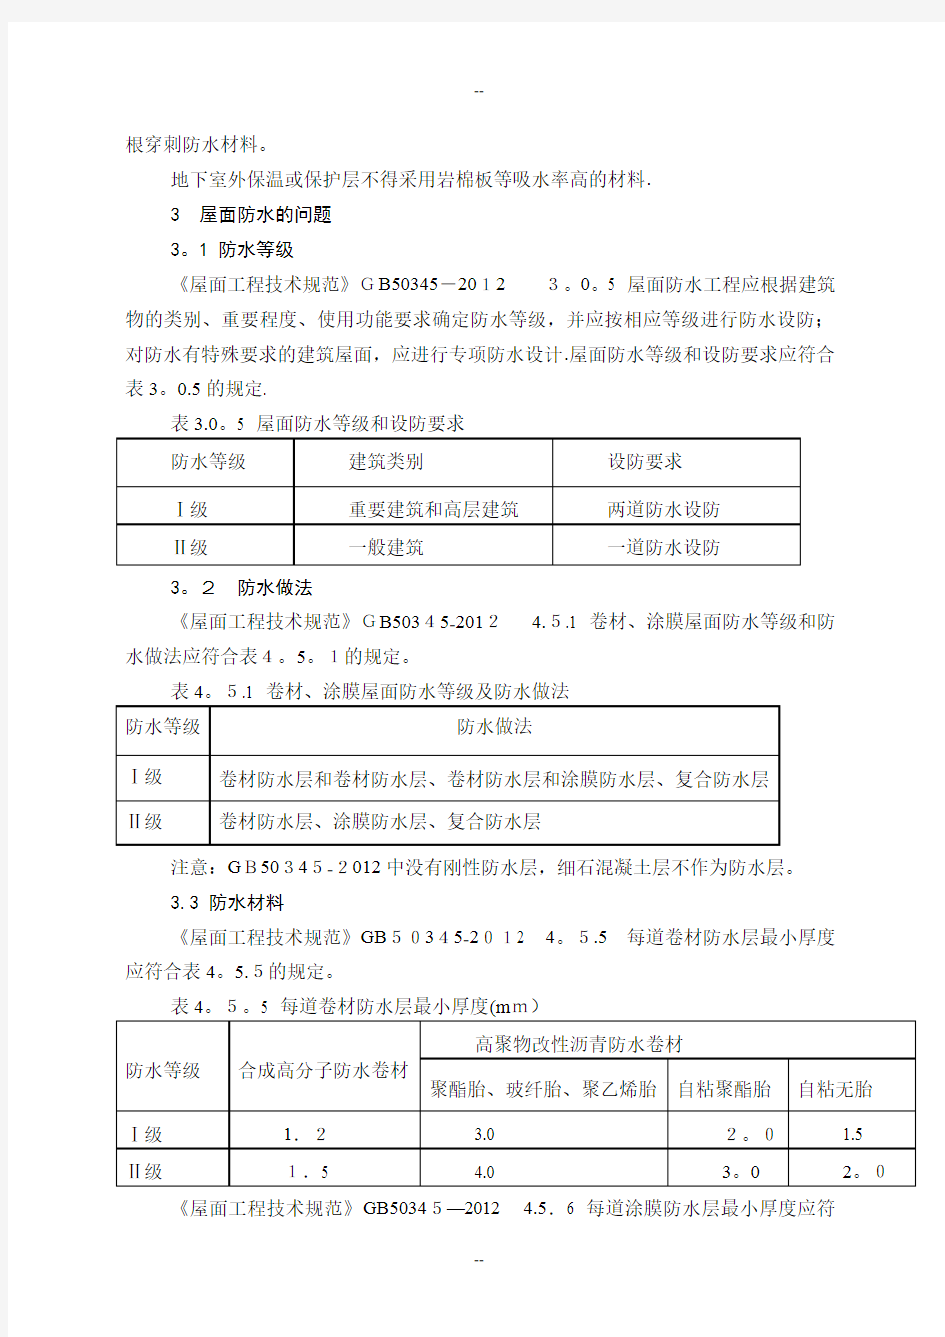 江苏省建设施工图审查中常见问题分析